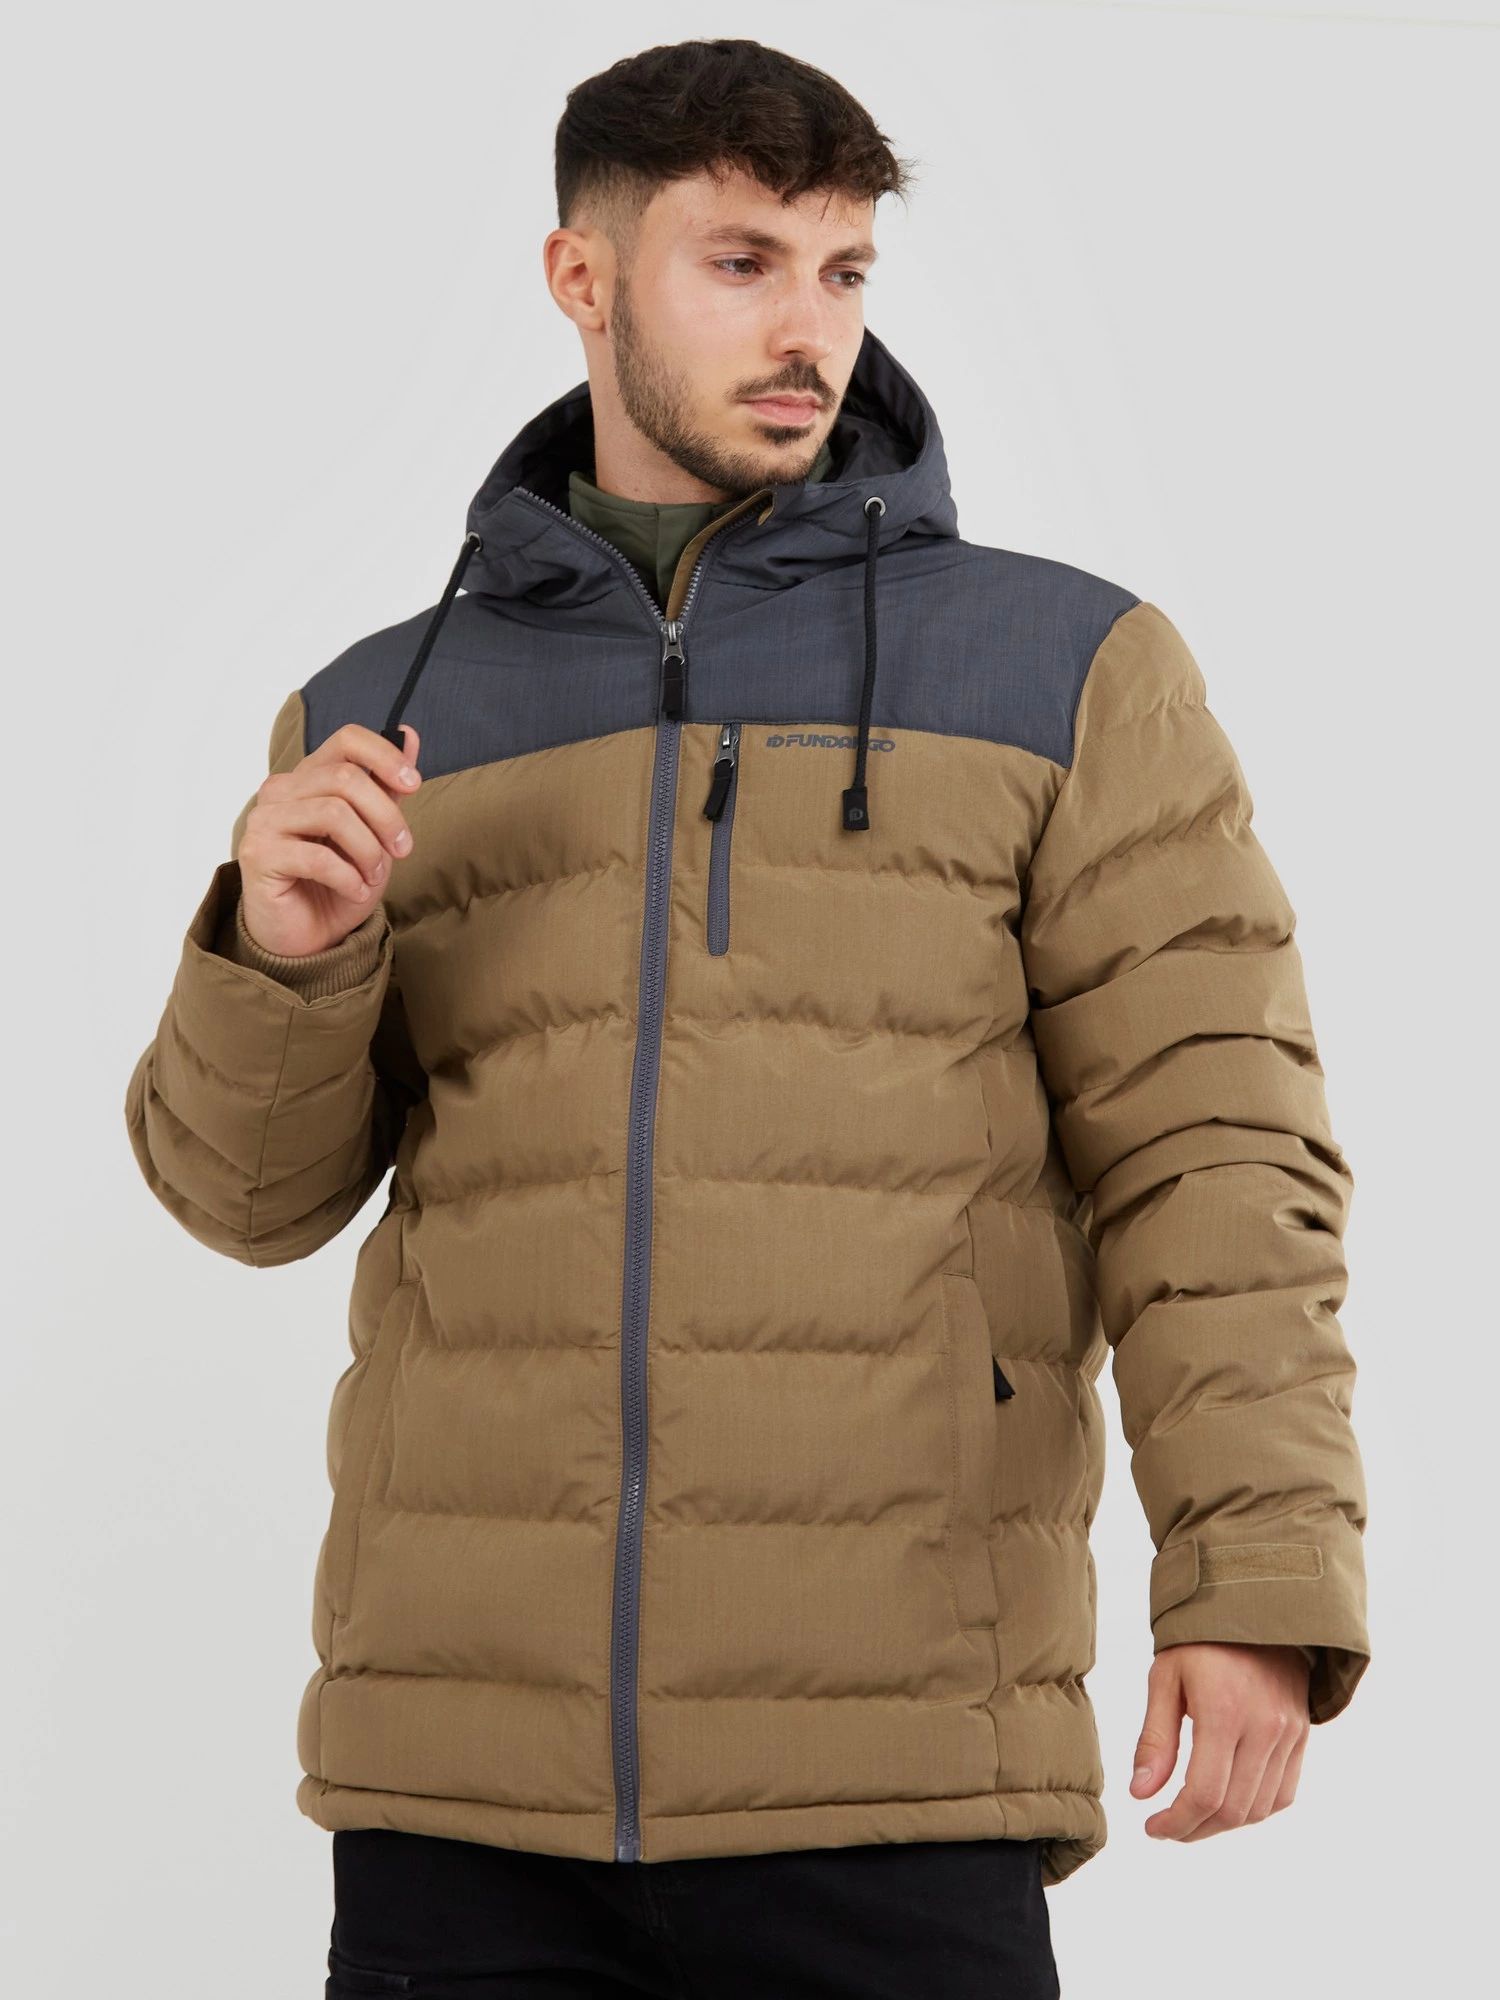 Курткая Fundango для мужчин, размер XL, 1KAD101, коричневая